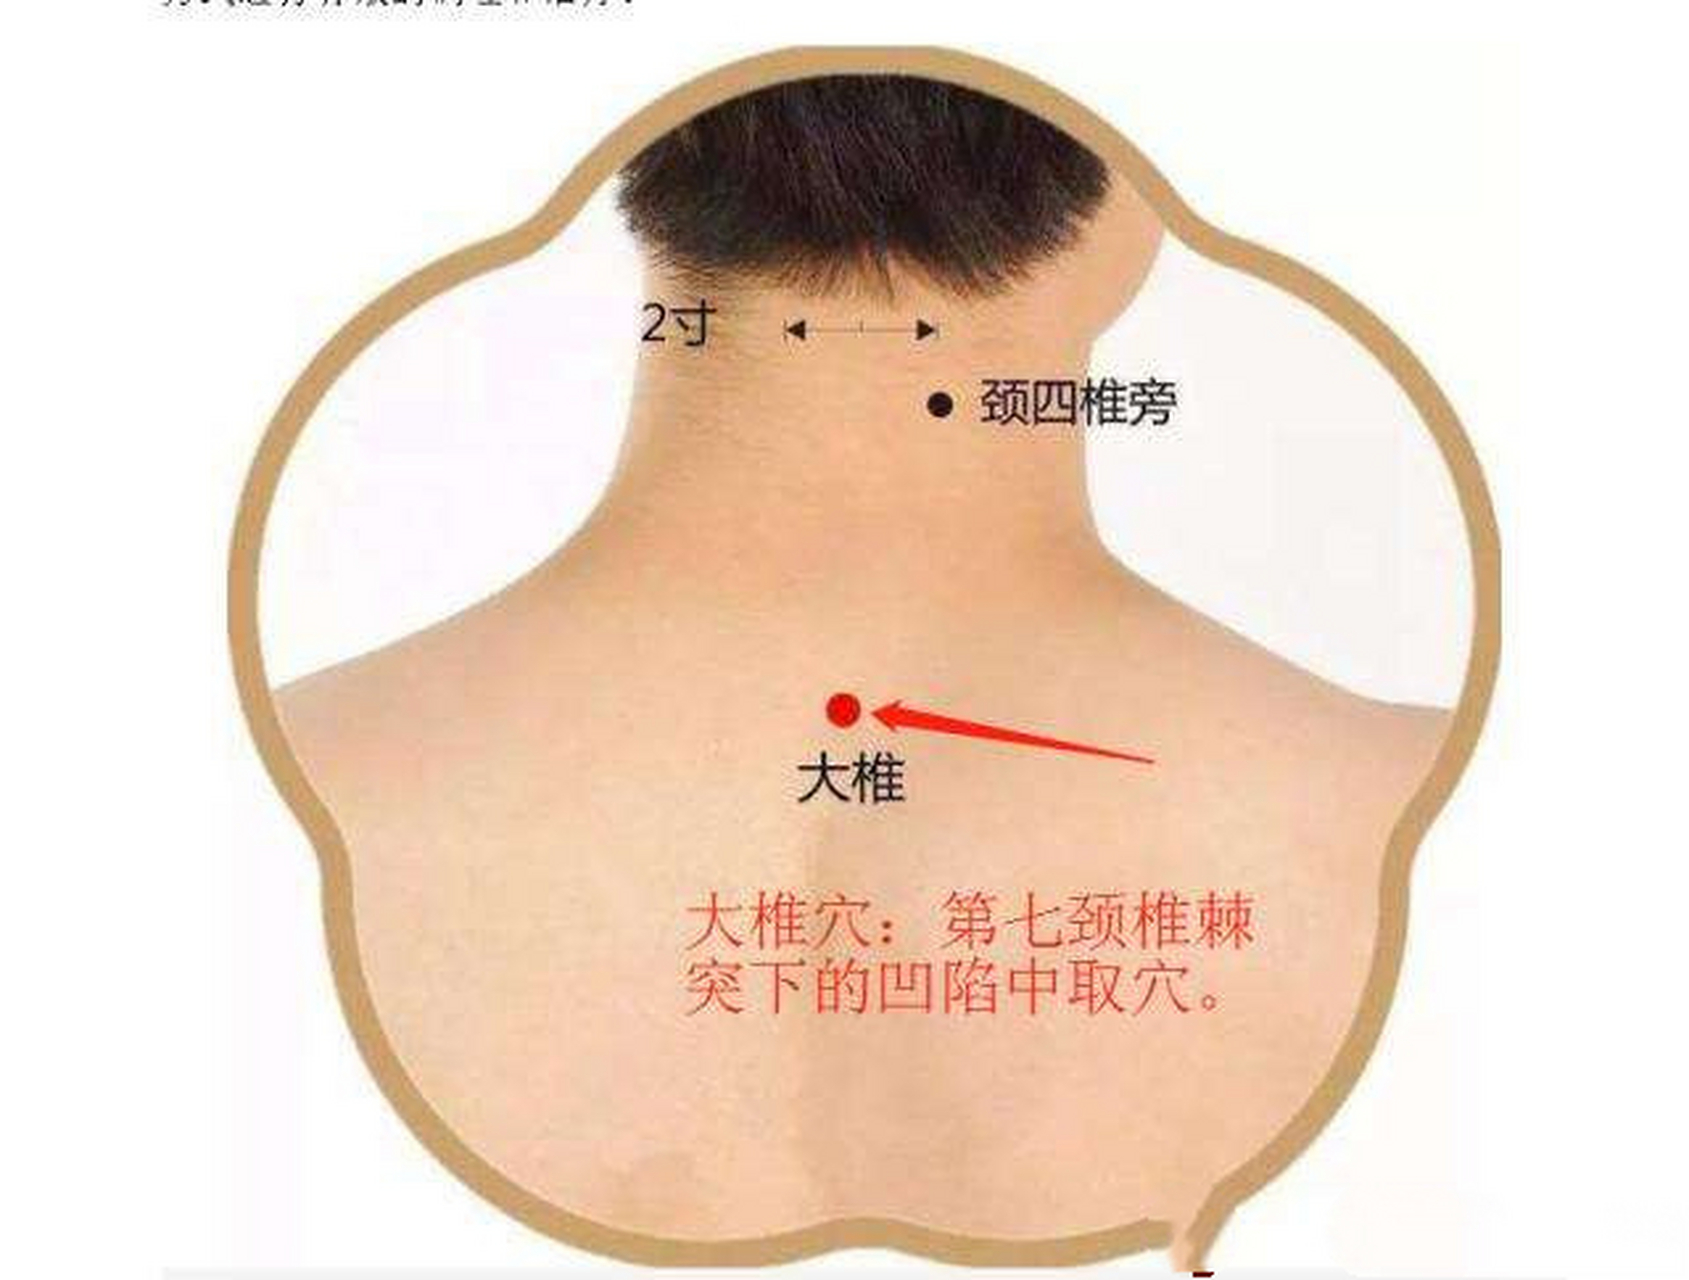 脖子后有一个重要穴位,是调理颈椎病的奇穴!